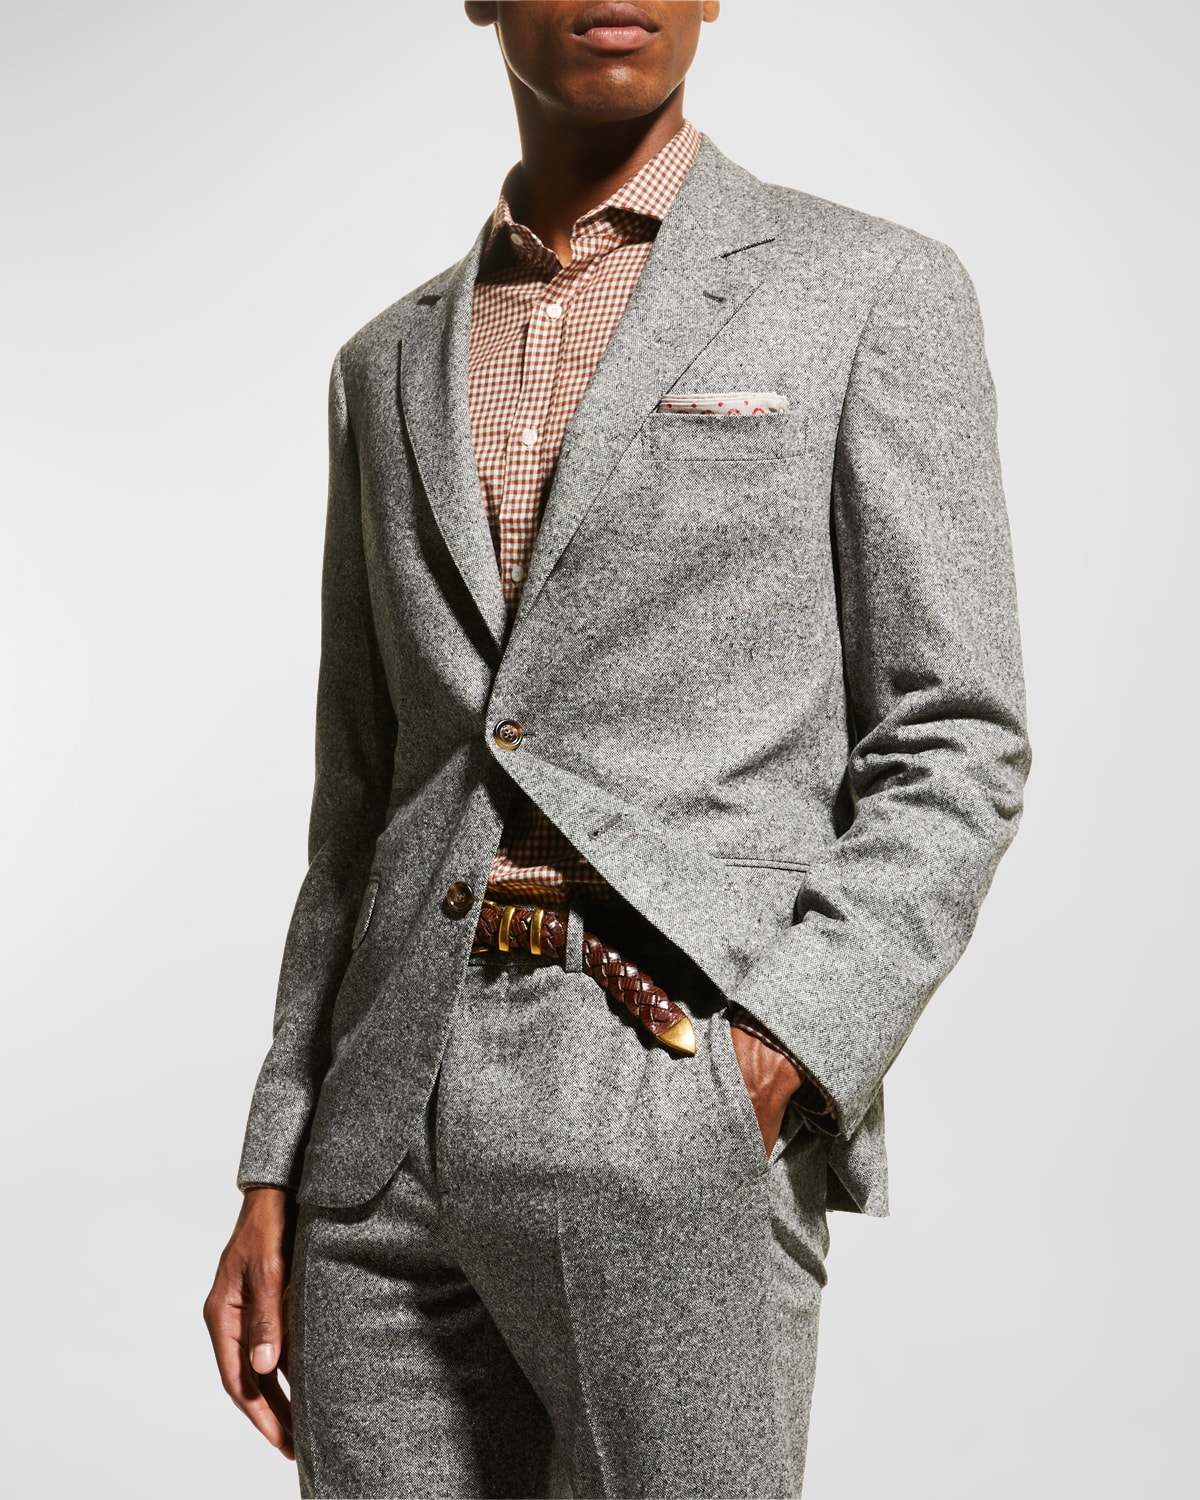 Brunello Cucinelli Men's Wool-Cashmere Two-Piece Suit